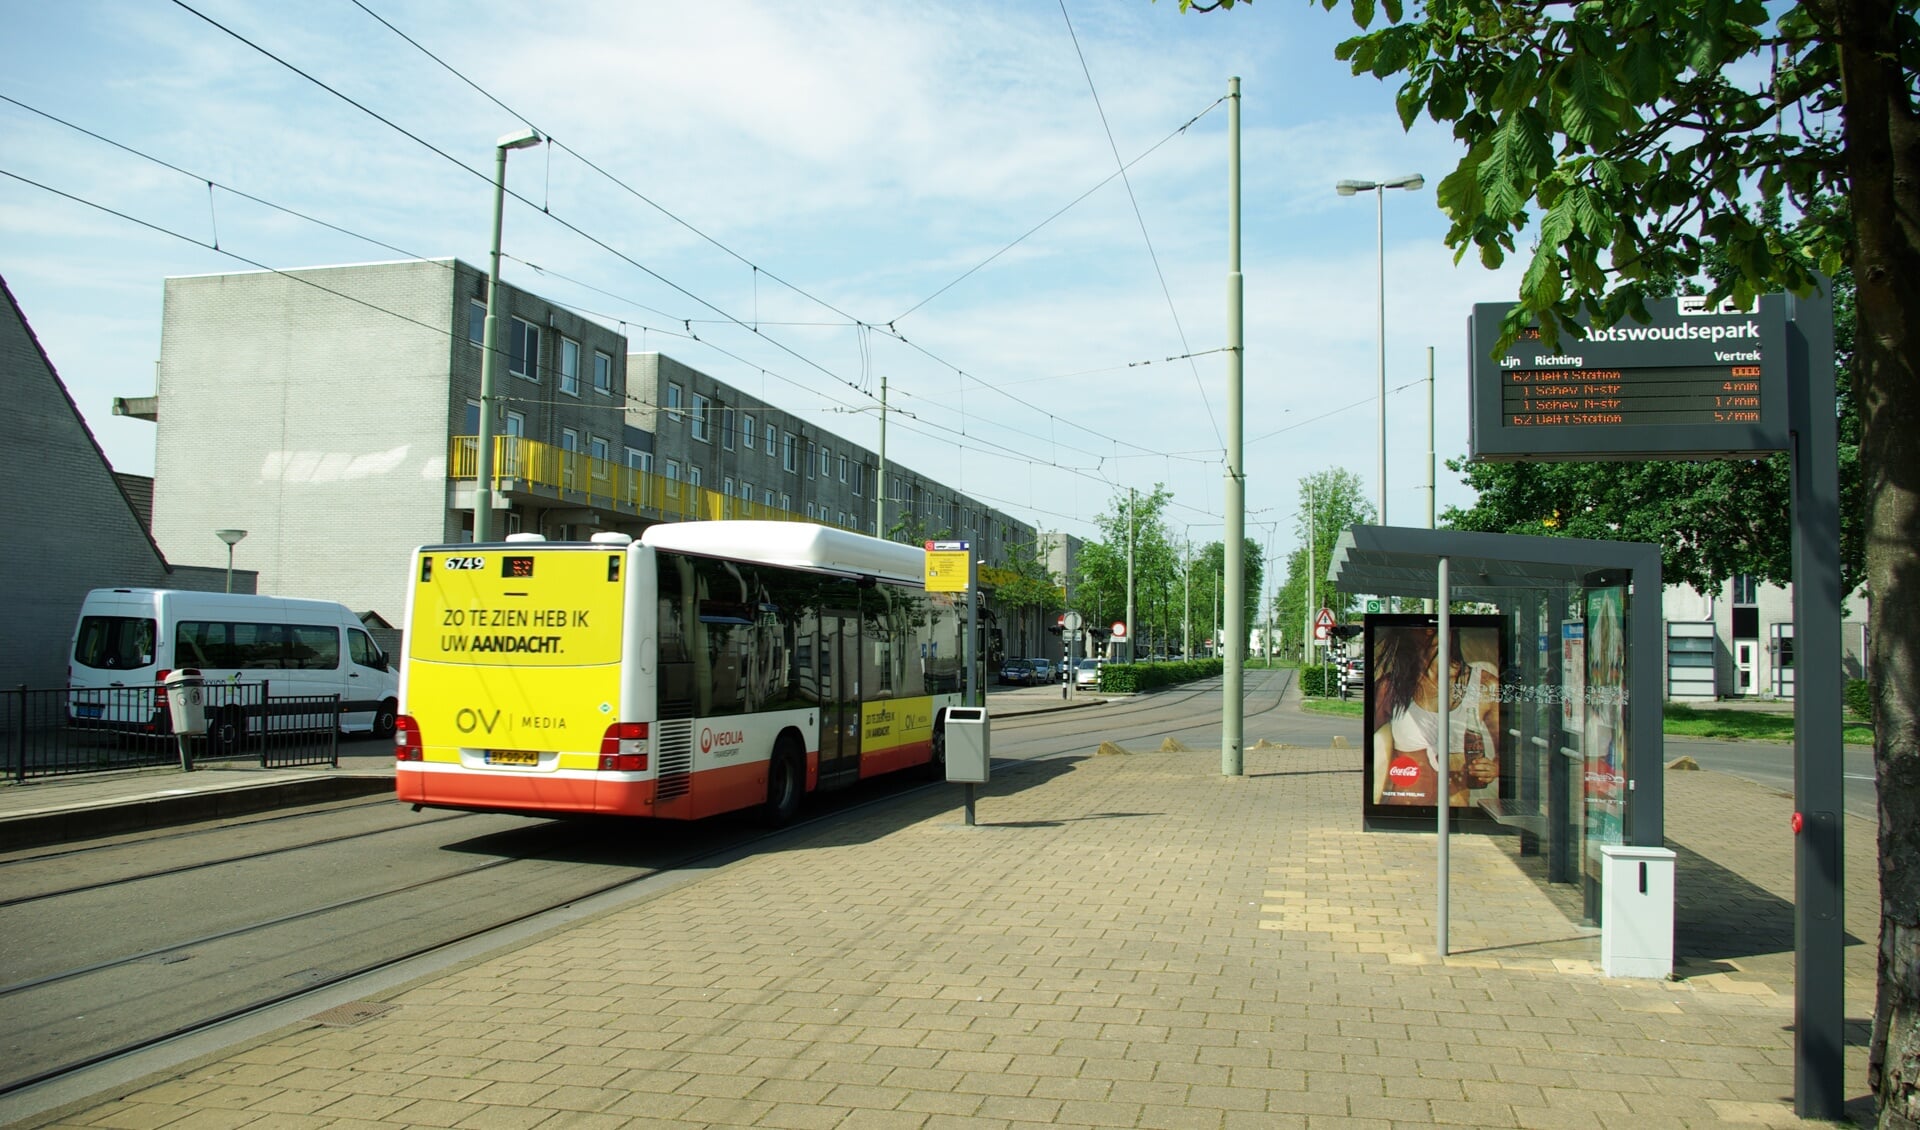 Bus 62 rijdt hier, bij gebrek aan in- of uitstappende reizers, hard voorbij de halte Abtswoudsepark. Als het aan Rover Delft ligt, wordt dit in de toekomst het keerpunt voor de bus. 